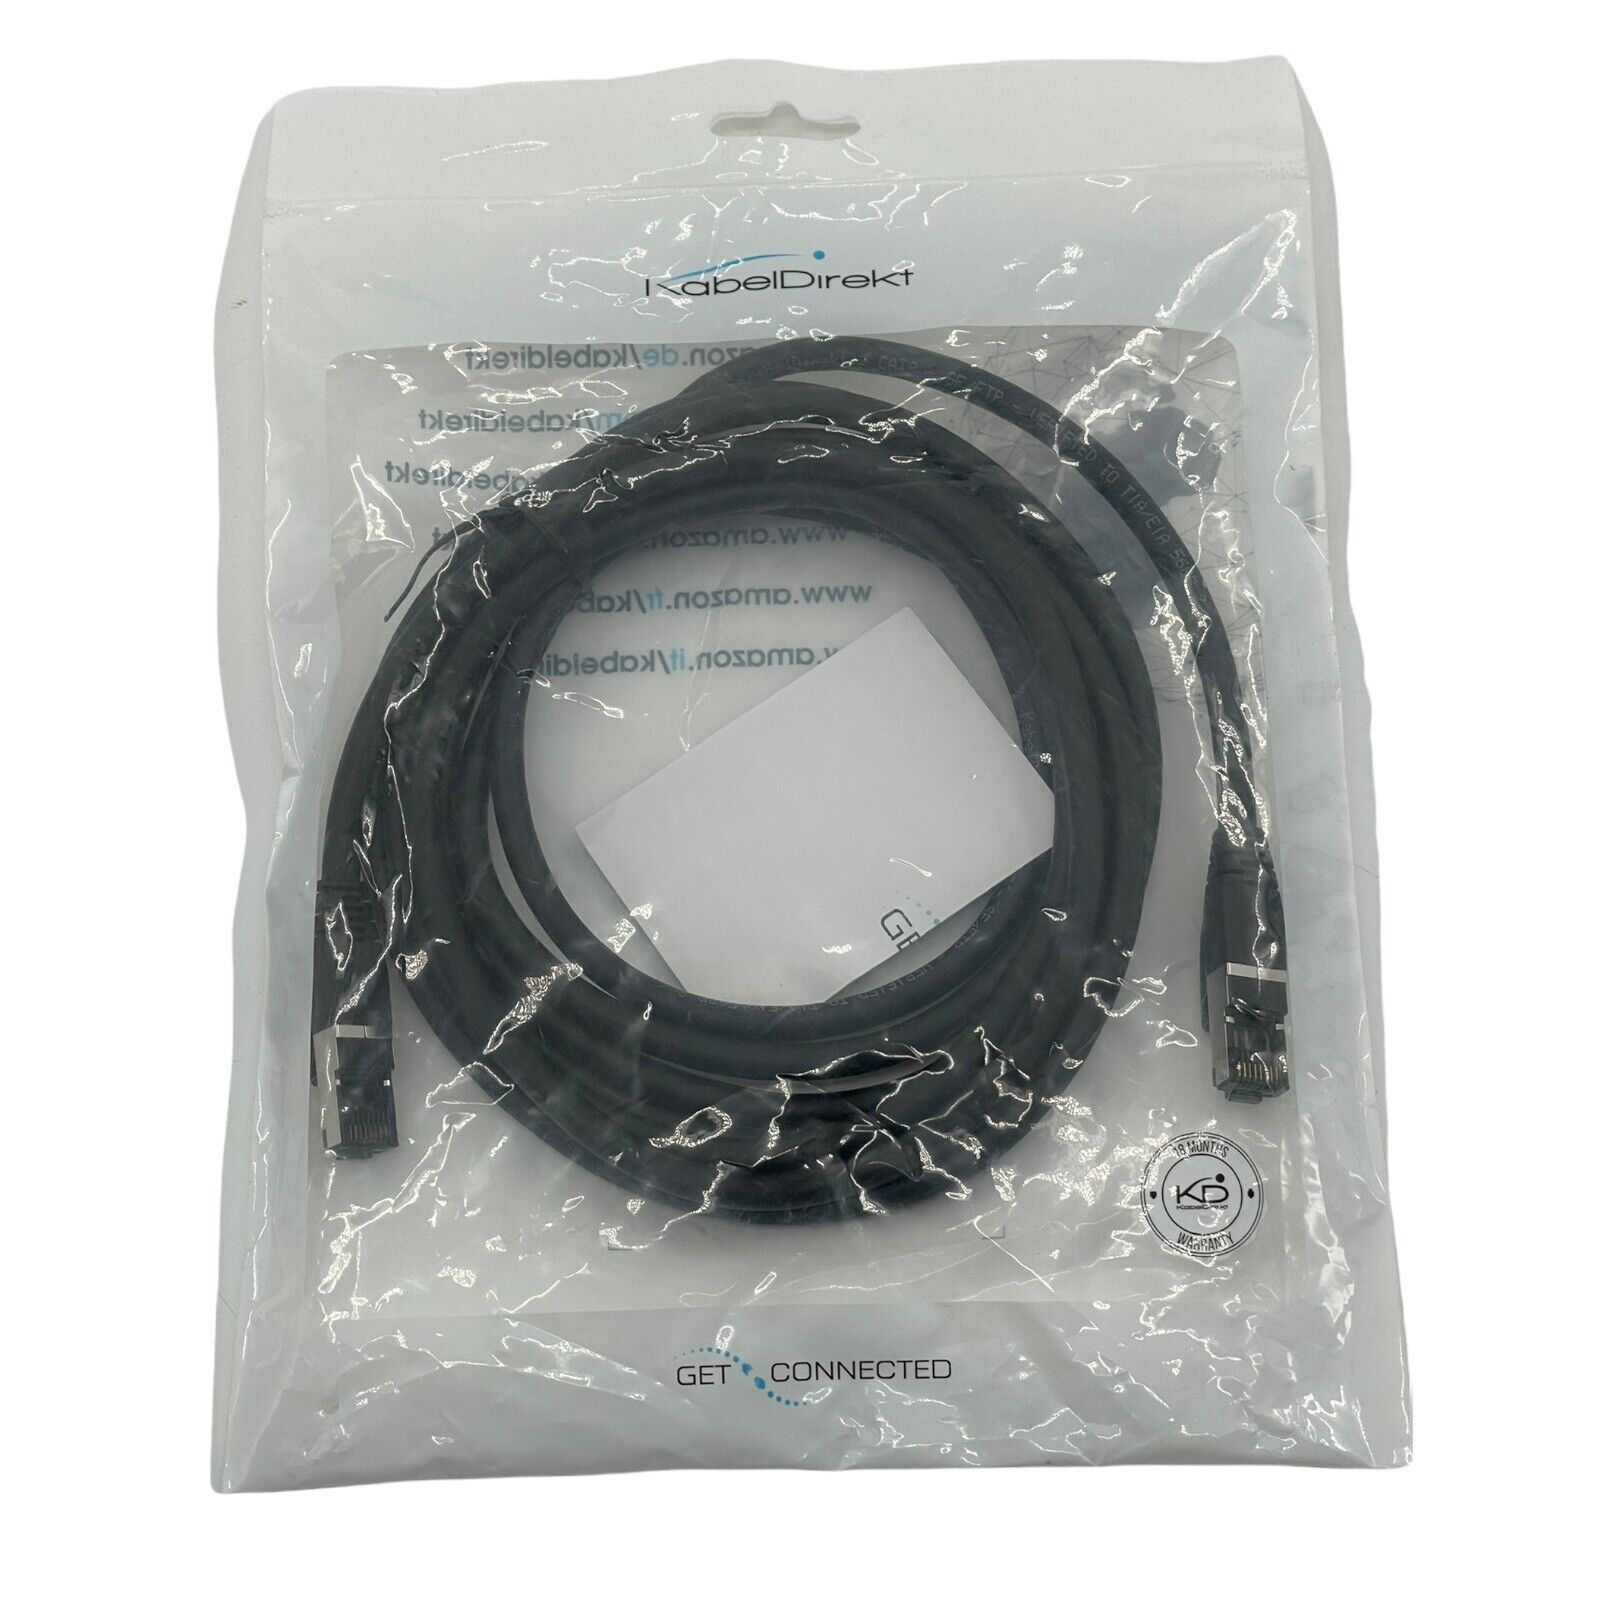 Kabel direkt  cat8 SF/FTP RJ45 ethernet cable 6 ft